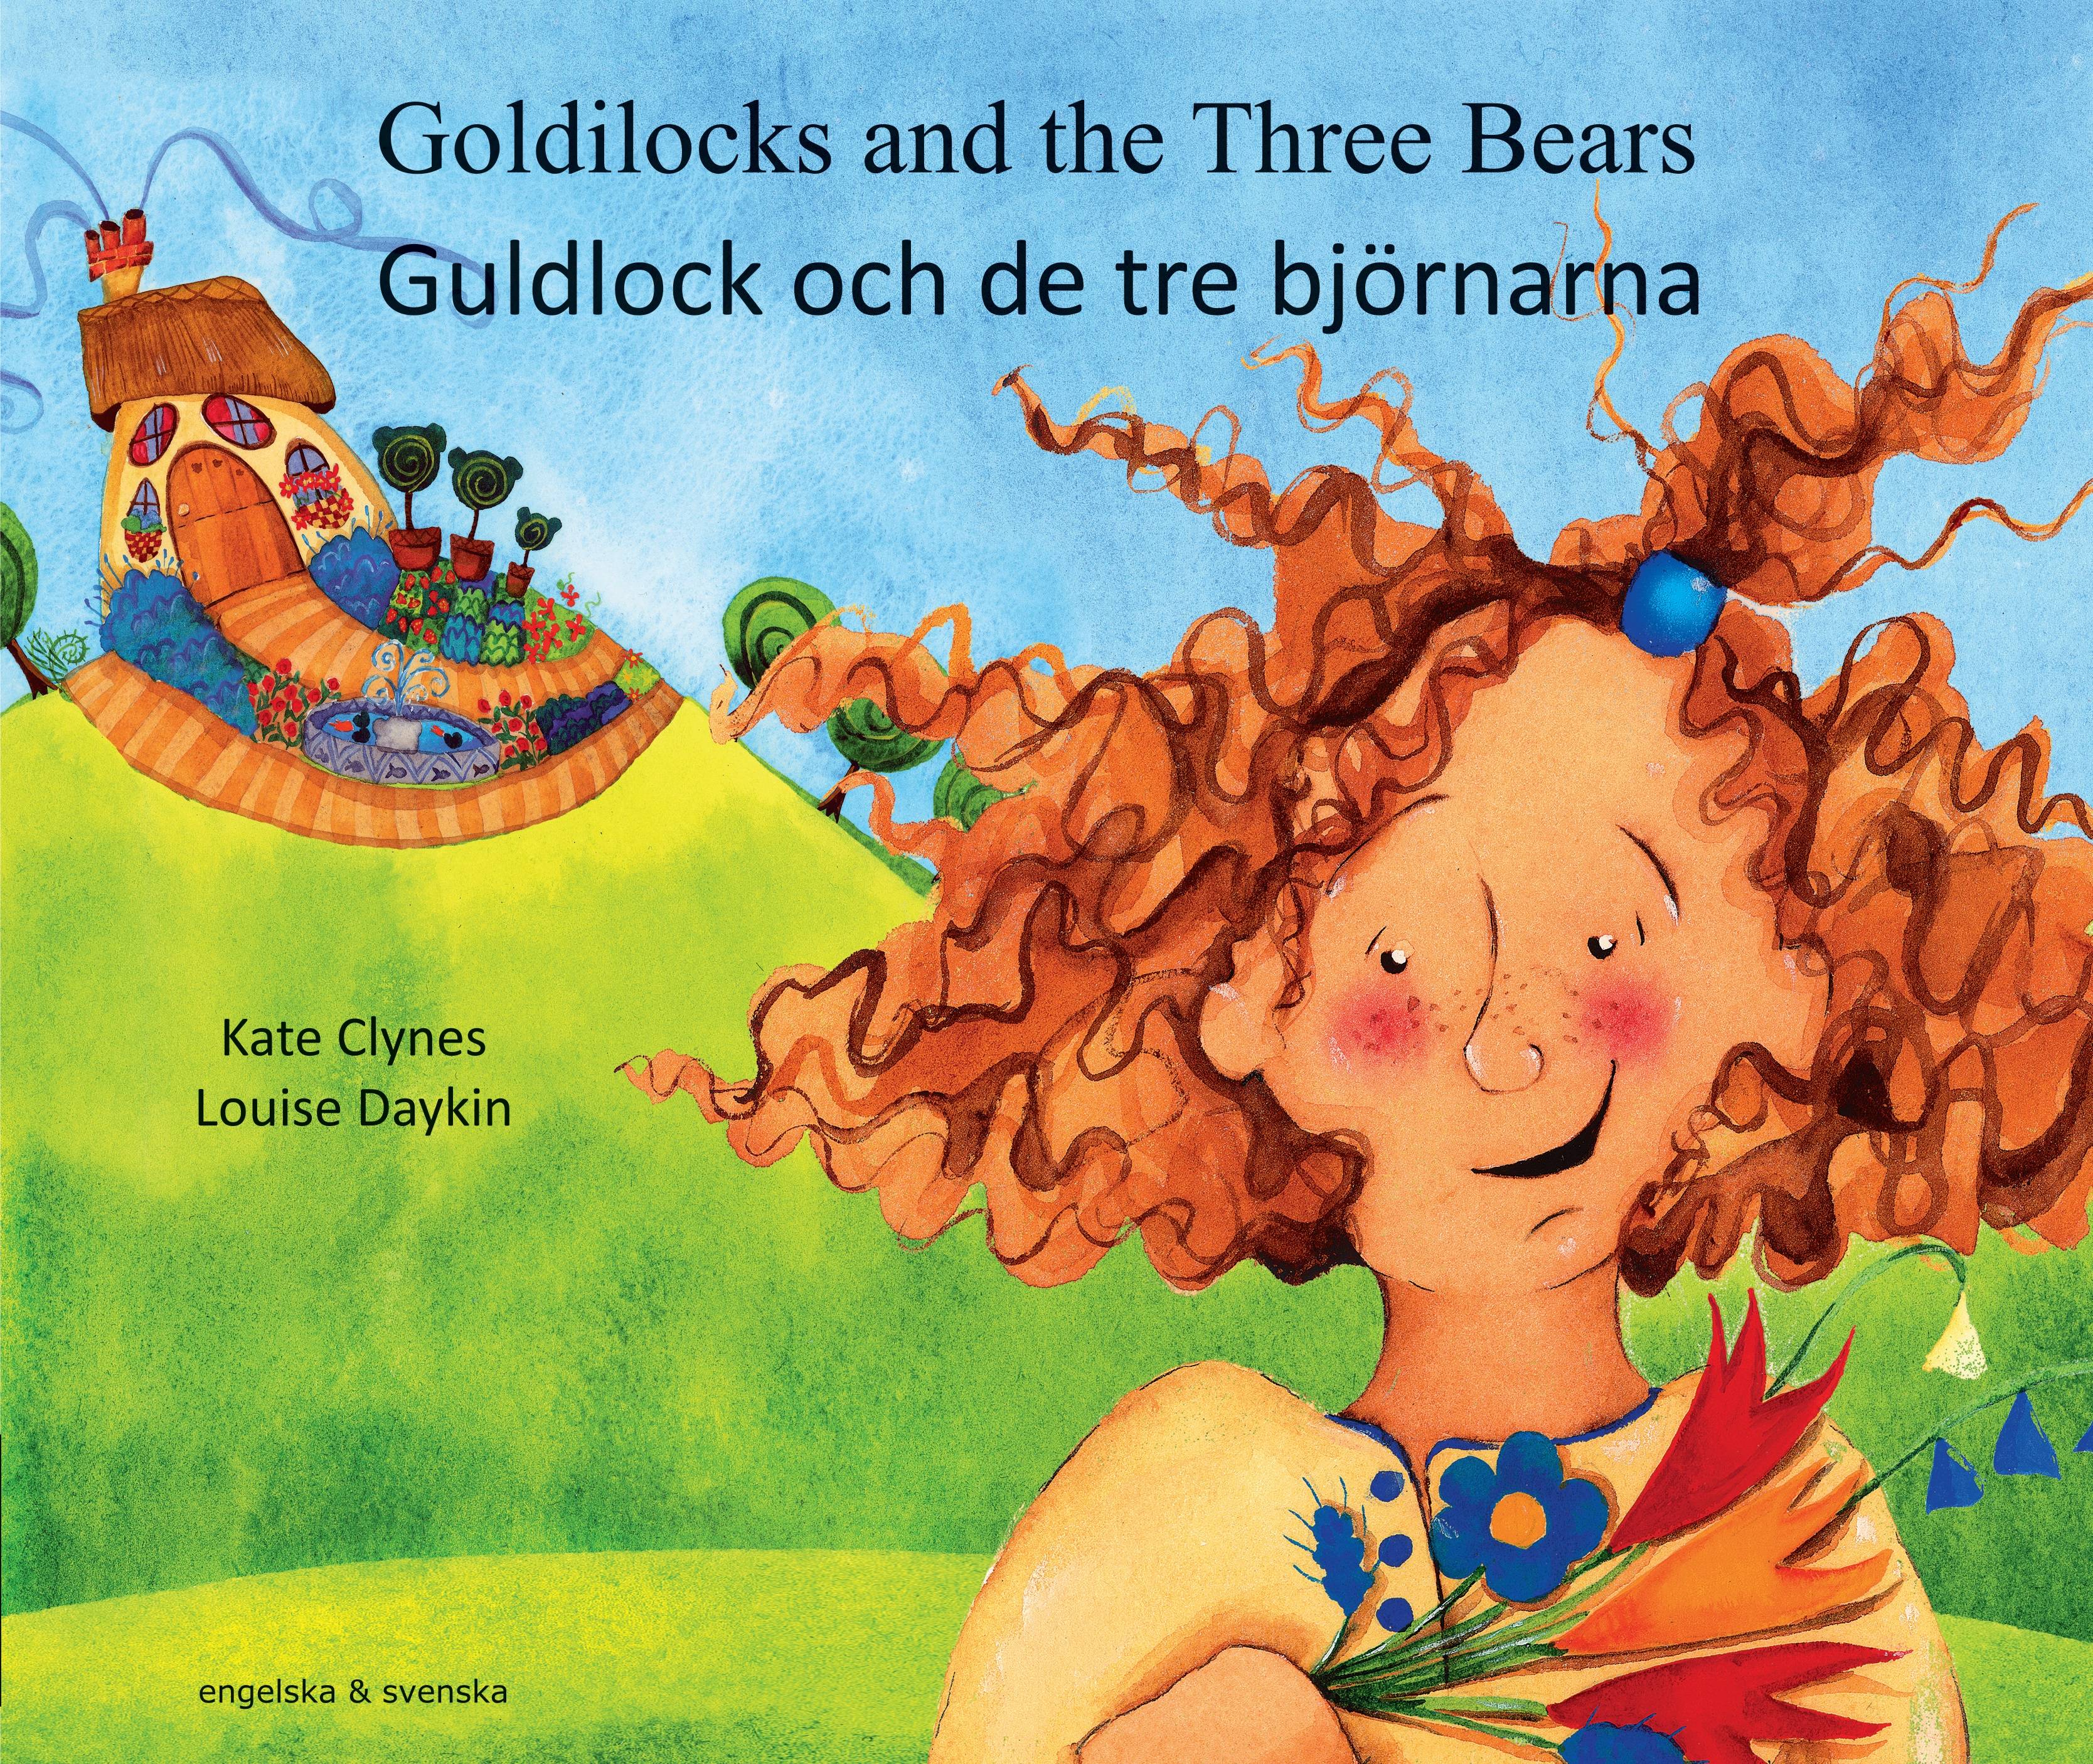 Guldlock och de tre björnarna (engelska och svenska)